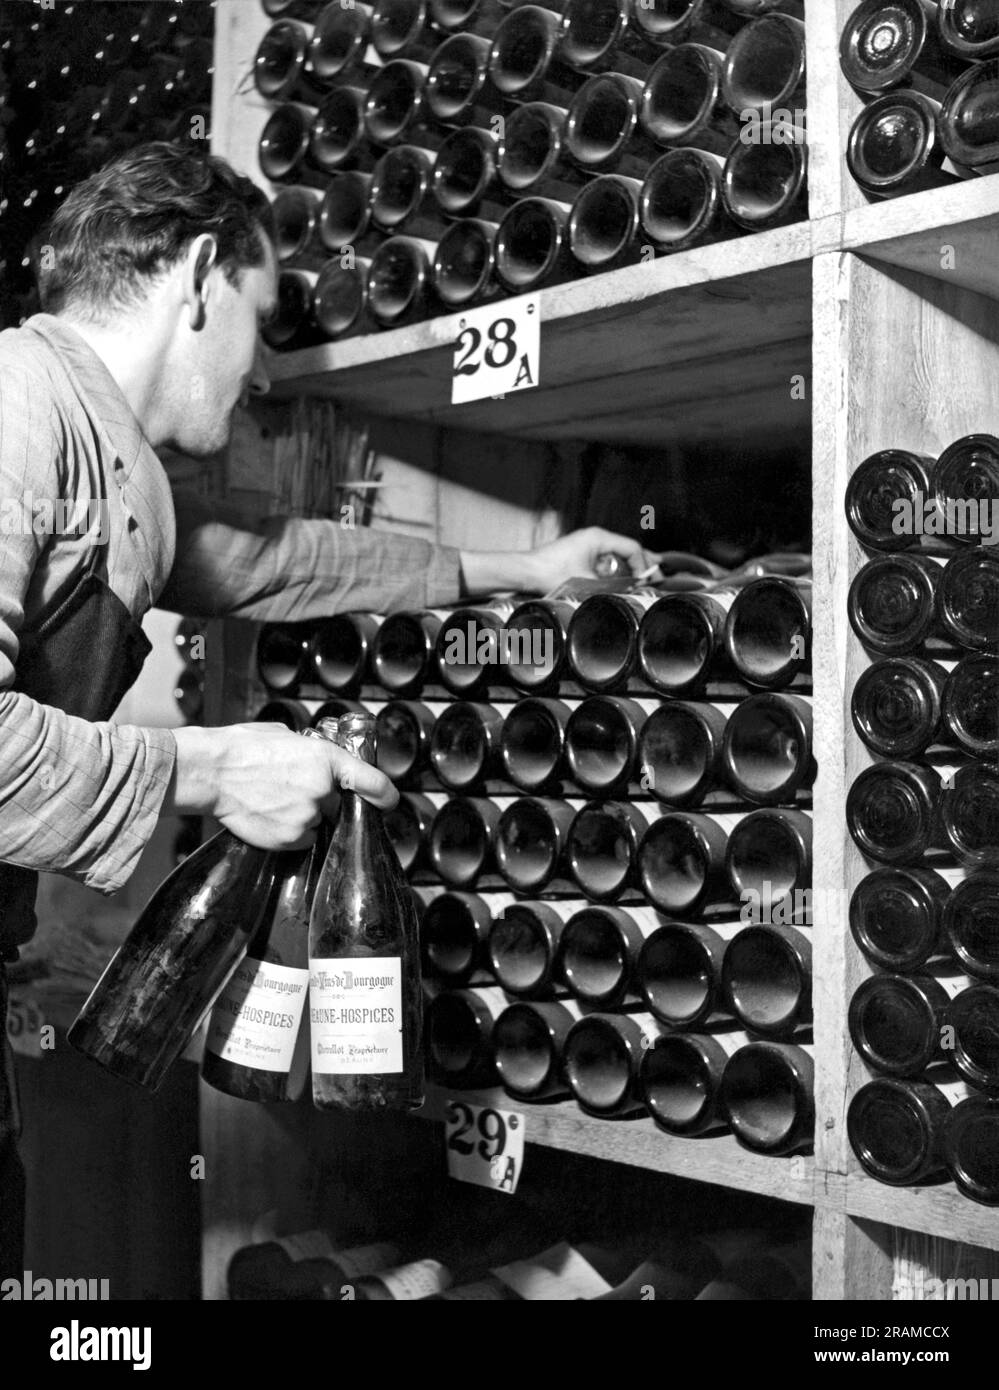 St. Moritz, Schweiz: ca. 1948. Ein Mitarbeiter im Palace Hotel in St. Moritz holt Flaschen Wein aus seinem Weinkeller. Stockfoto